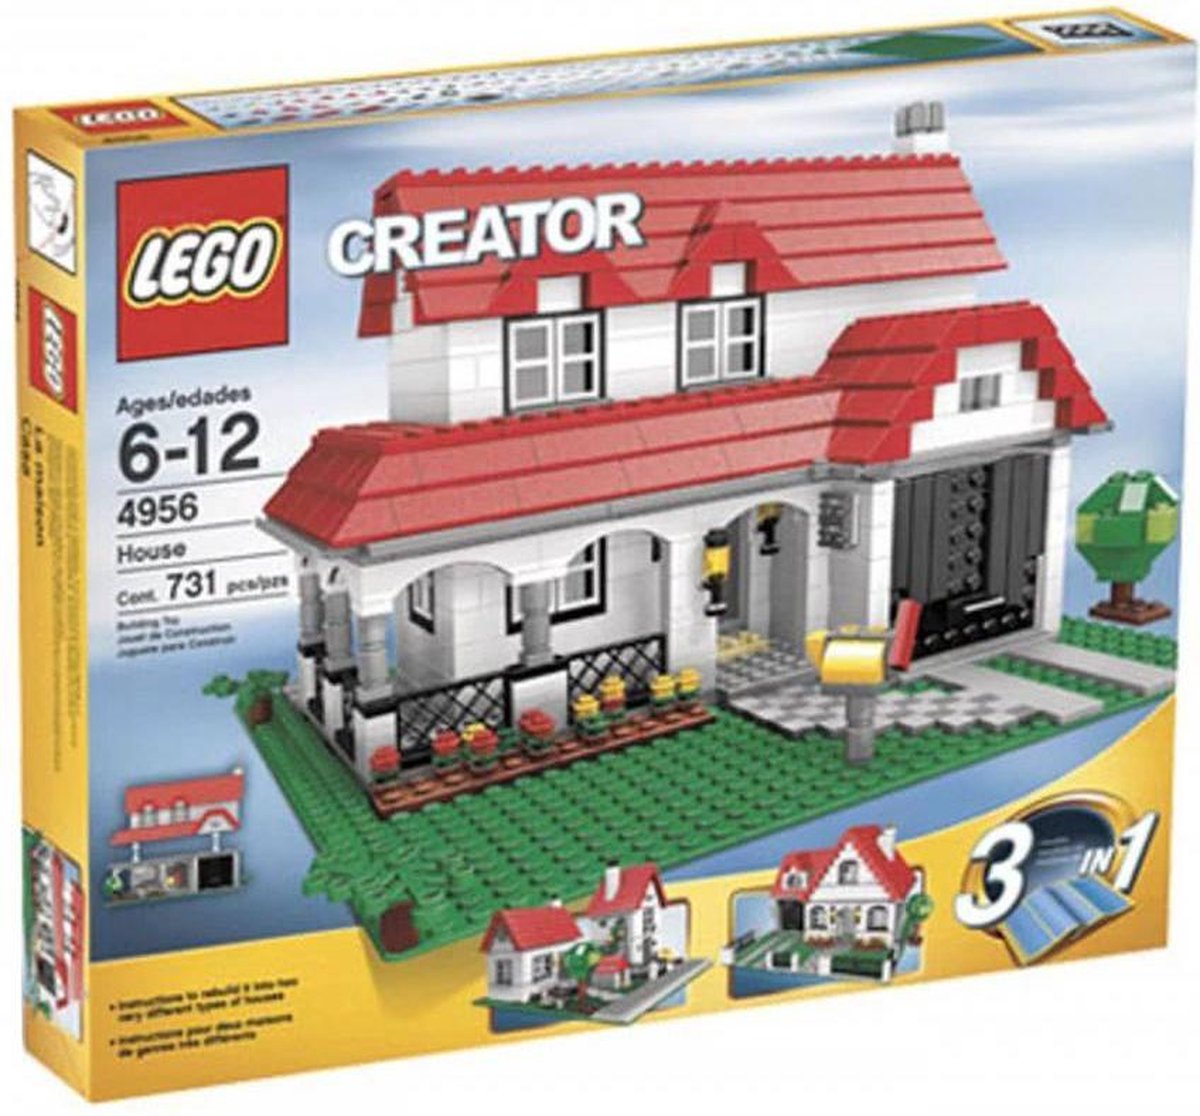 LEGO Creator Huis - 4956 | bol.com